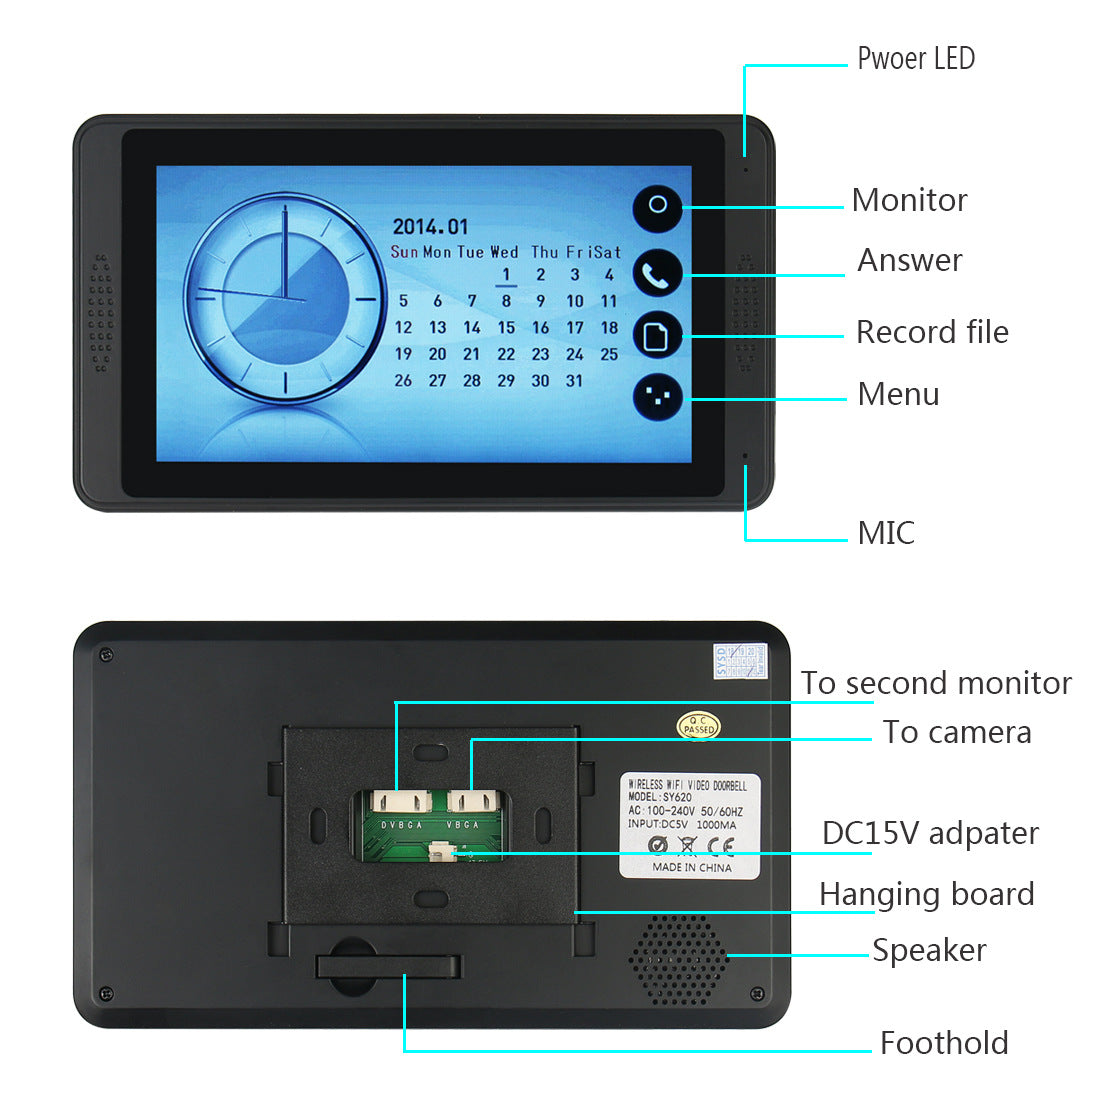 TD® Interphone vidéo imperméable Sonnette avec écran tactile Visiophone avec vision nocturne IR LED sécurité mot de passe et calendr